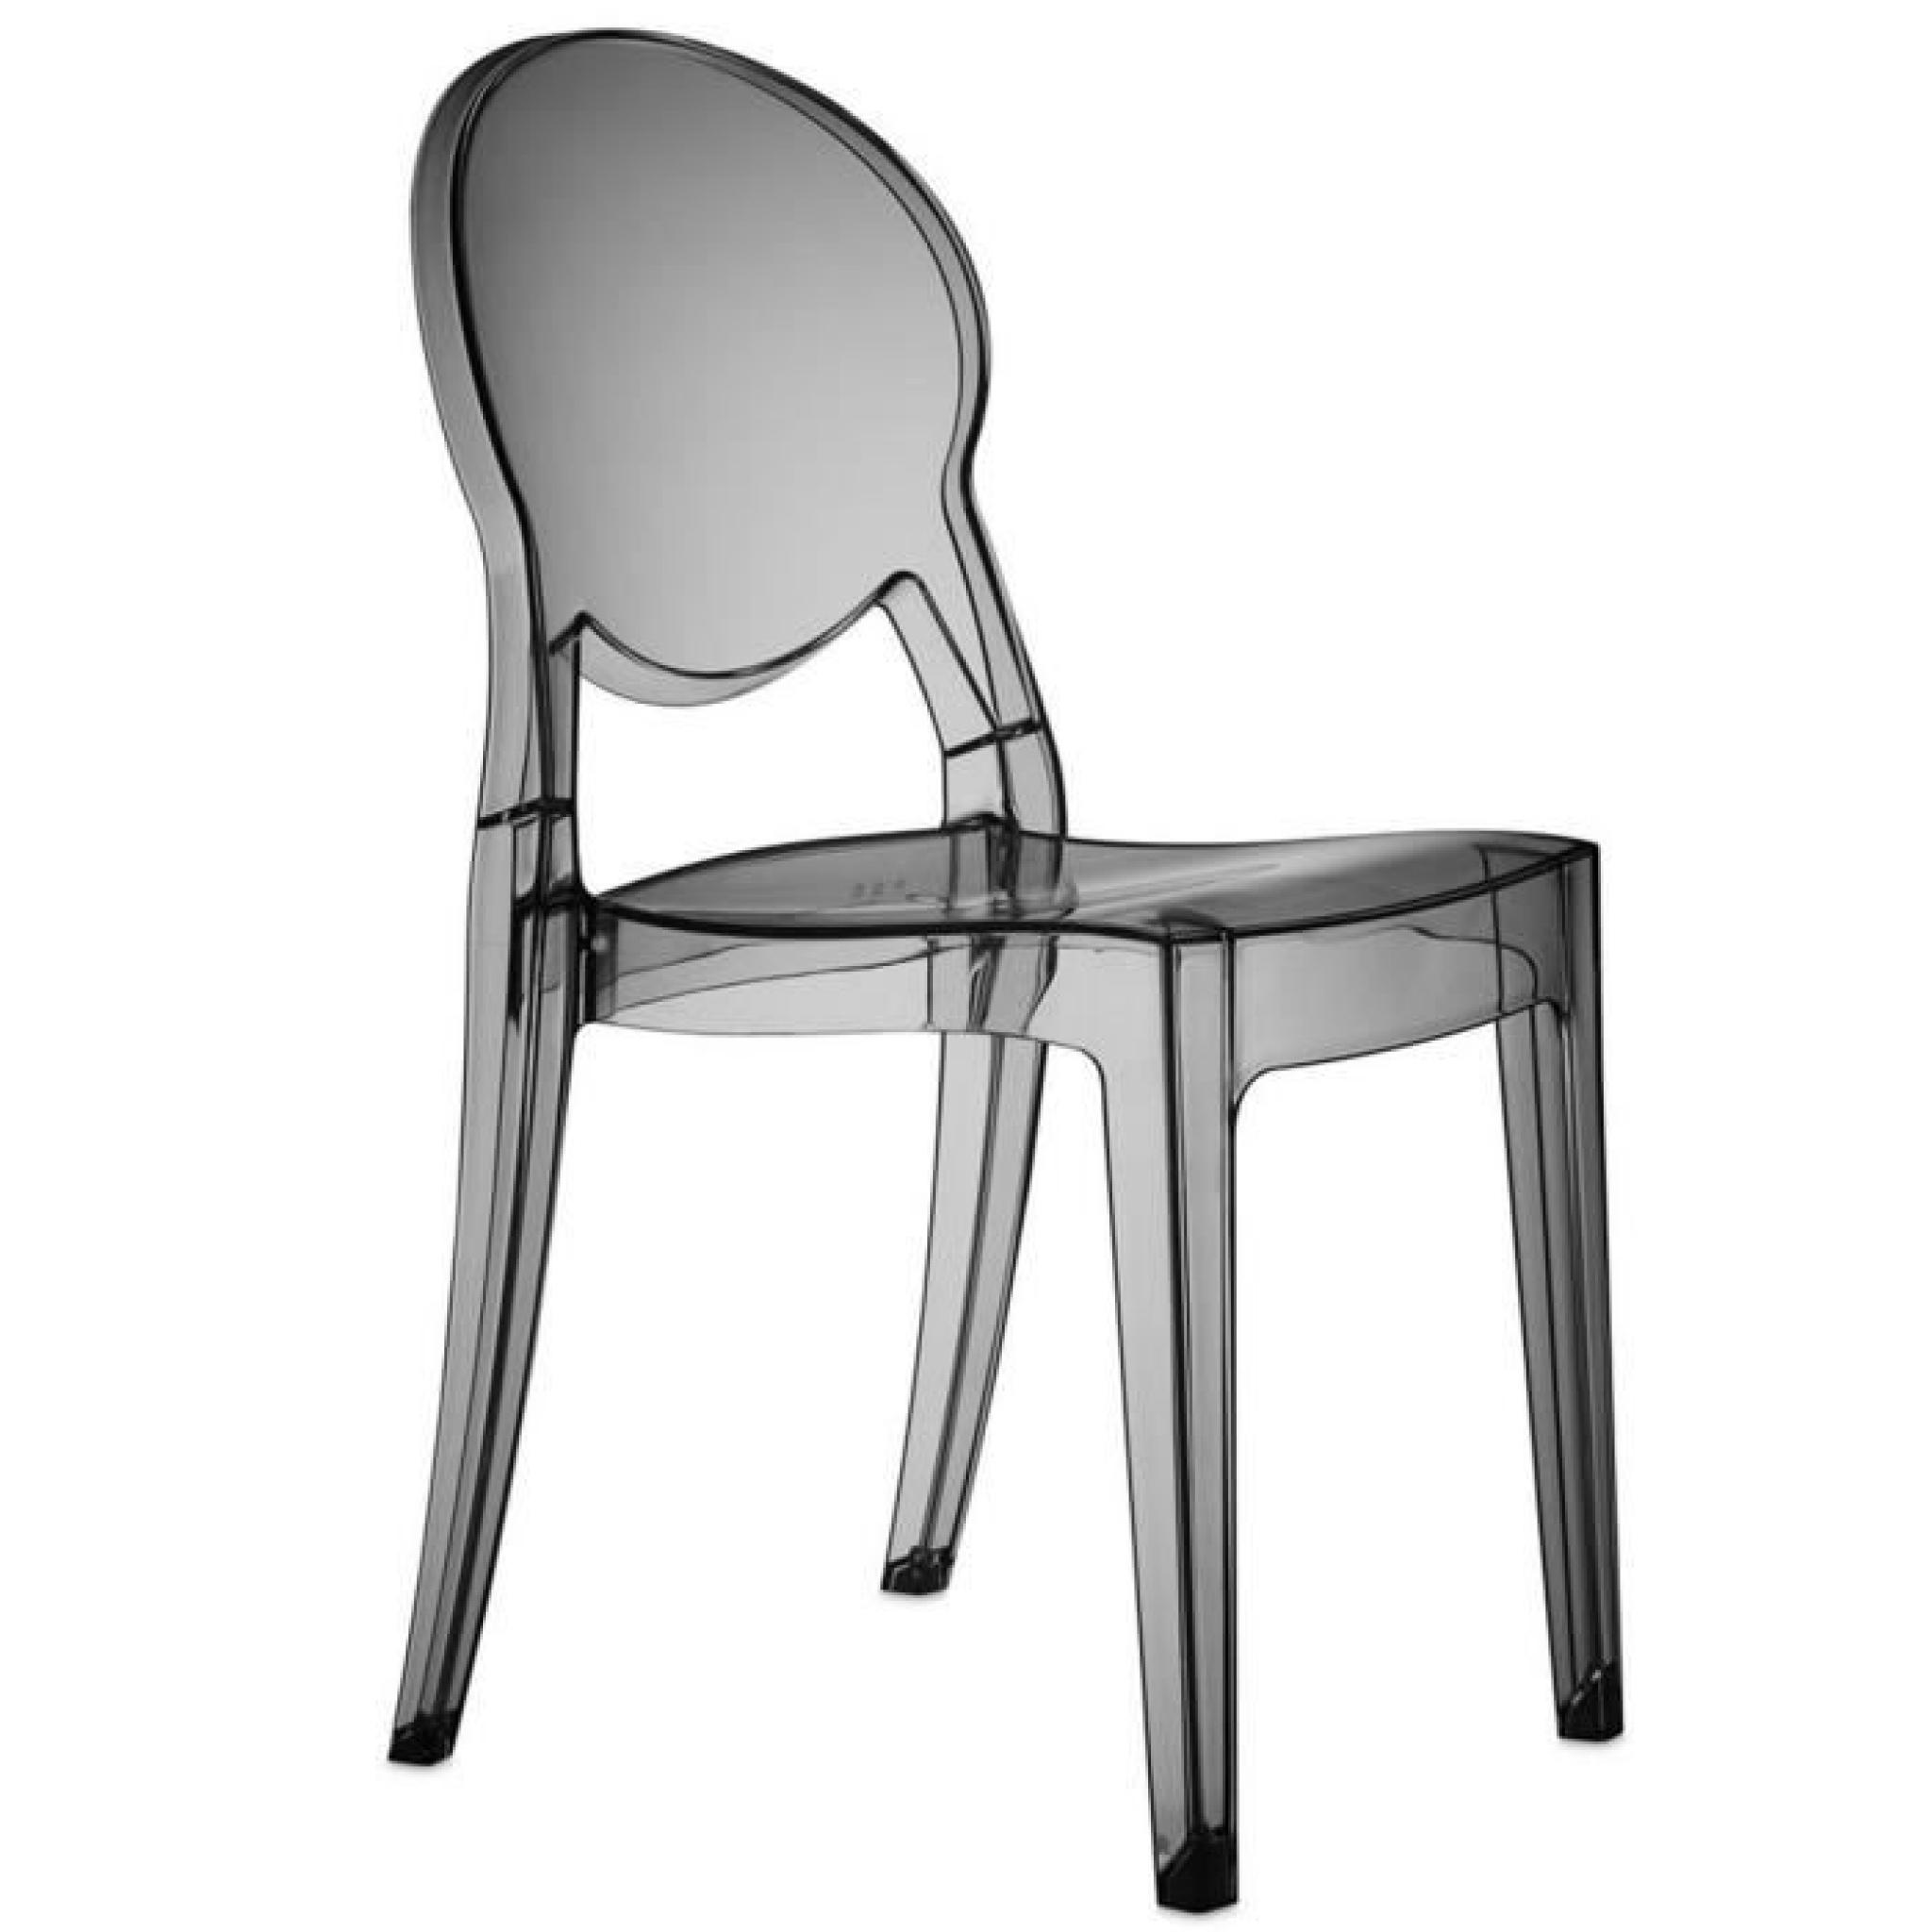 Chaise transparent fumé design Régence Couleur Incolore Matière. Polycarbonate